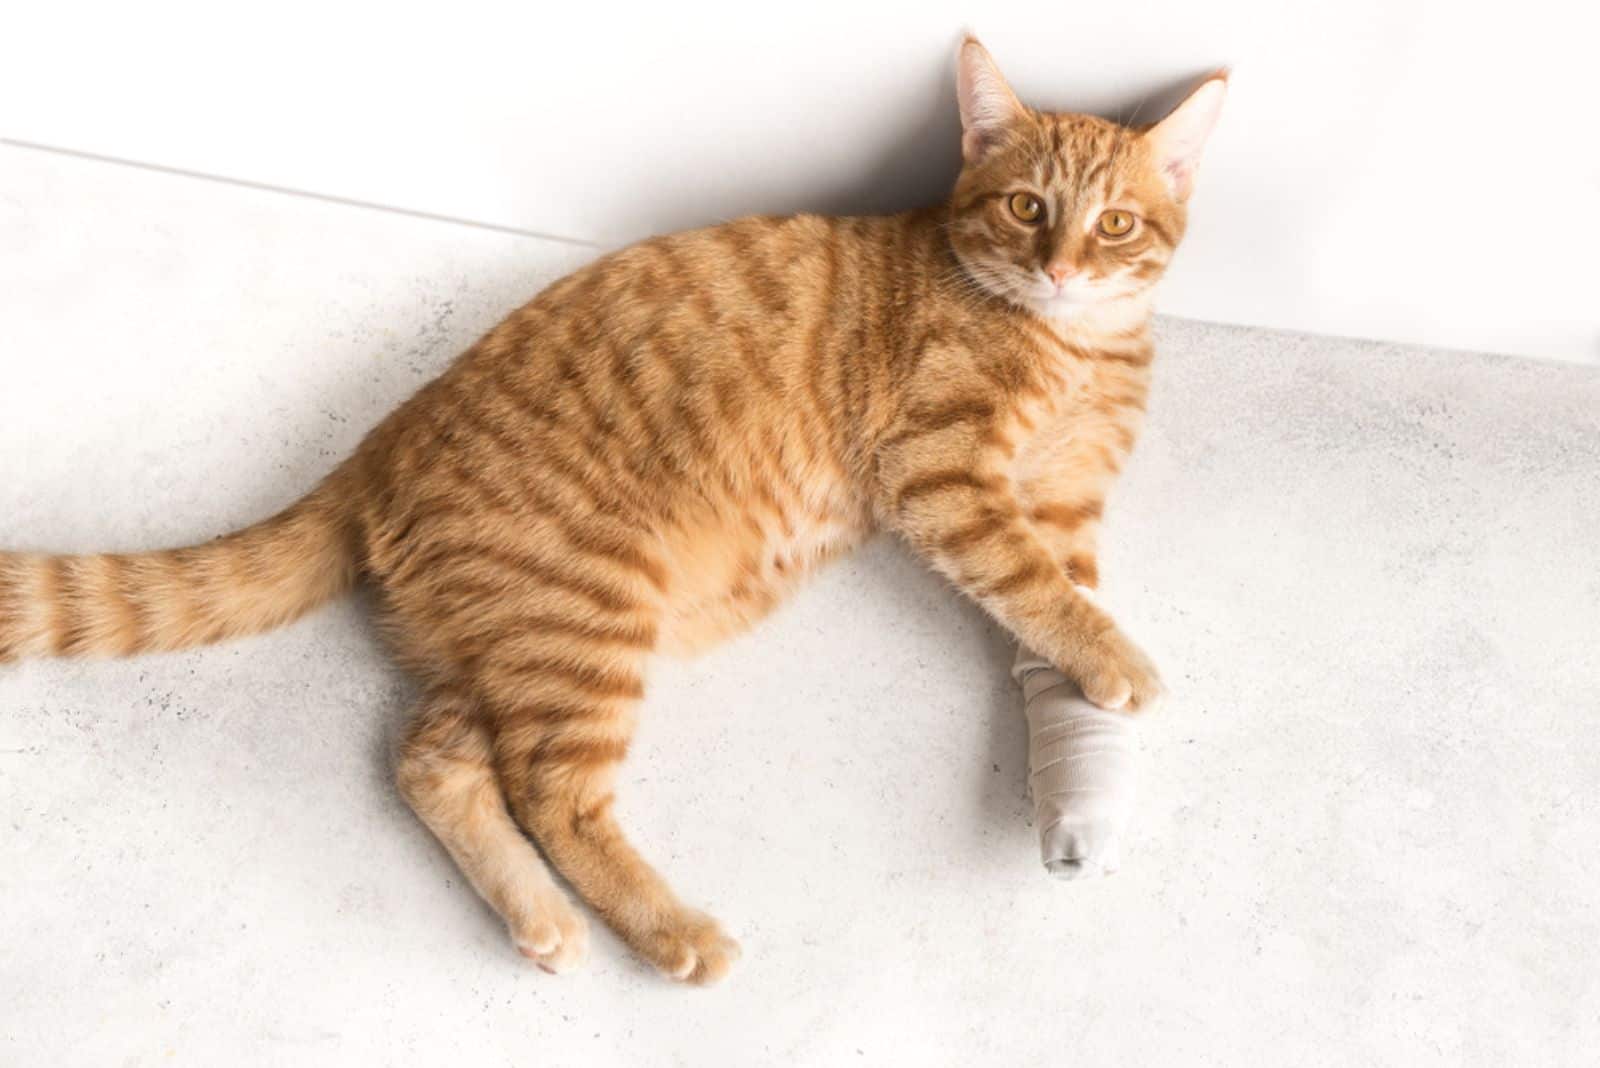  Cute ginger cat with broken leg on white floor